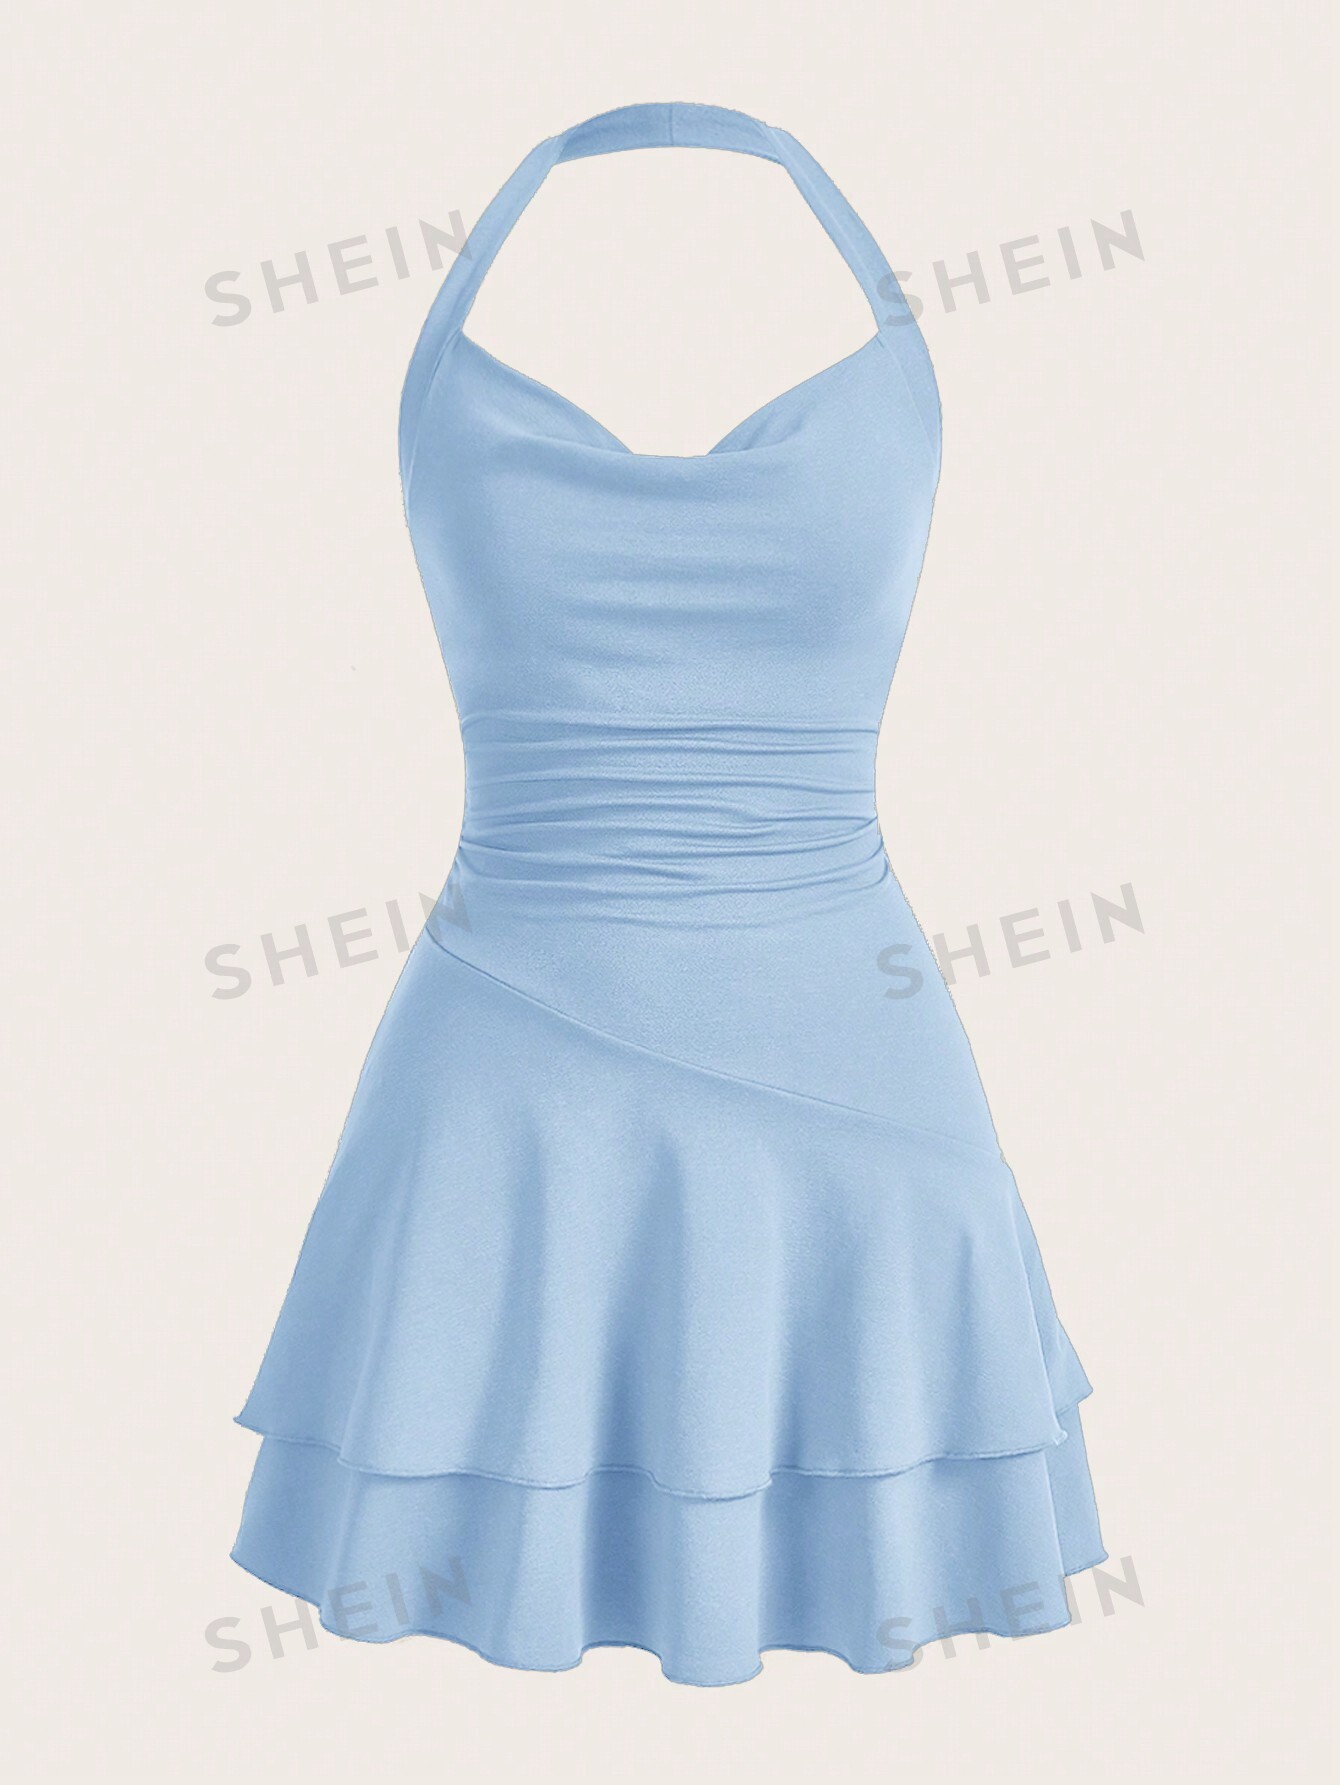 SHEIN MOD однотонное женское платье с бретелькой на шее и многослойным подолом, голубые shein mod женское винтажное сине белое облегающее платье без бретелек с фарфоровым принтом синий и белый